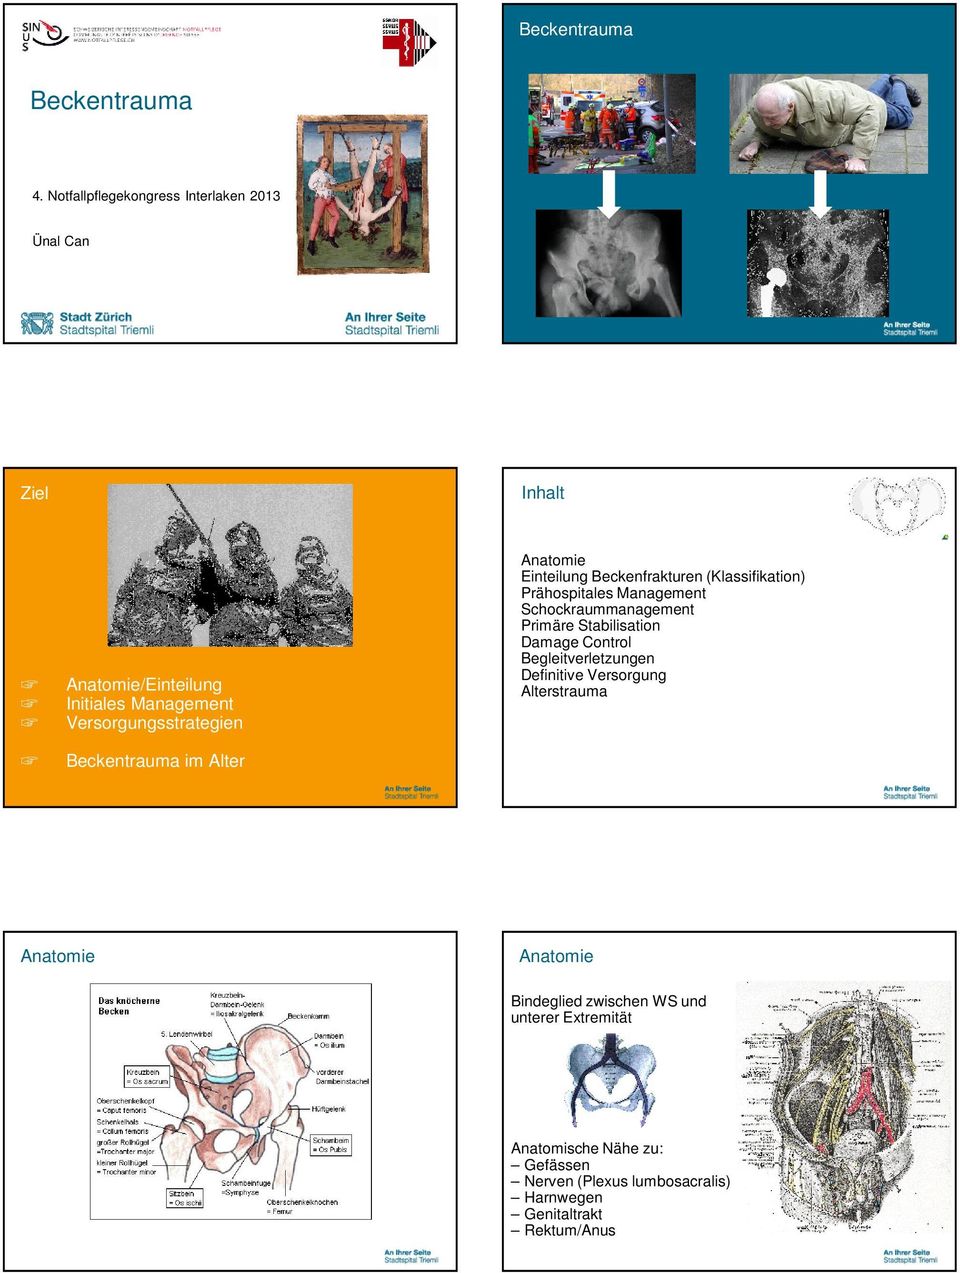 Beckentrauma im Alter Anatomie Einteilung Beckenfrakturen (Klassifikation) Prähospitales Management Schockraummanagement Primäre